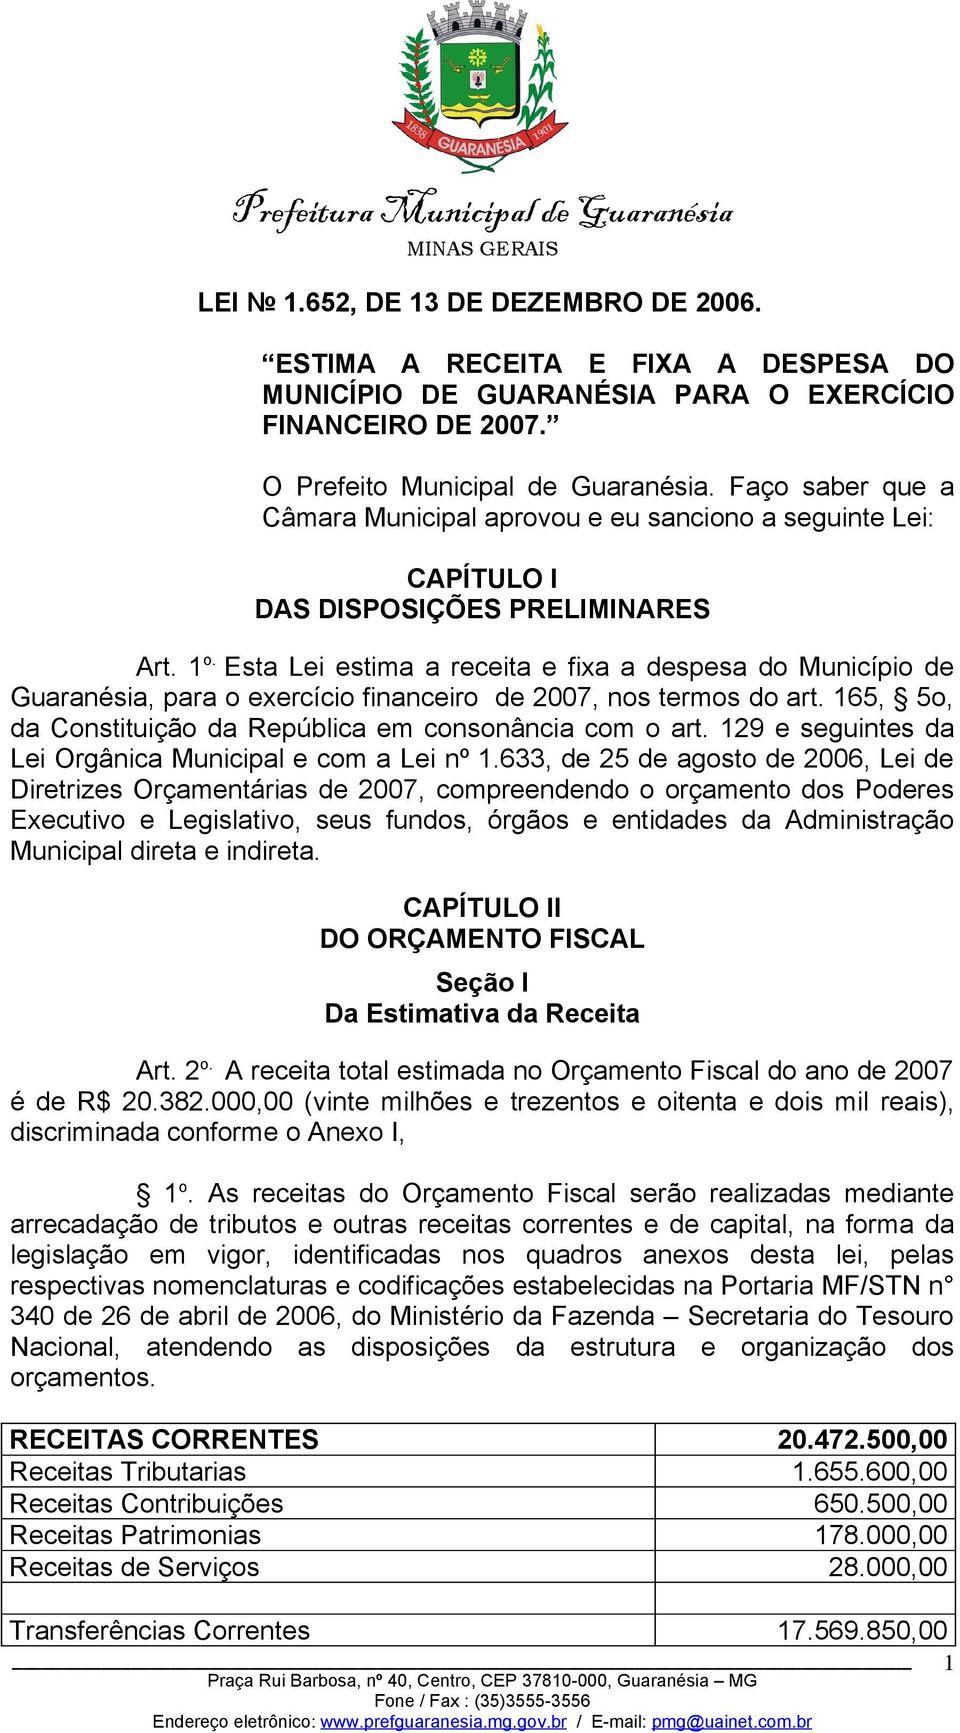 Esta Lei estima a receita e fixa a despesa do Município de Guaranésia, para o exercício financeiro de 2007, nos termos do art. 165, 5o, da Constituição da República em consonância com o art.